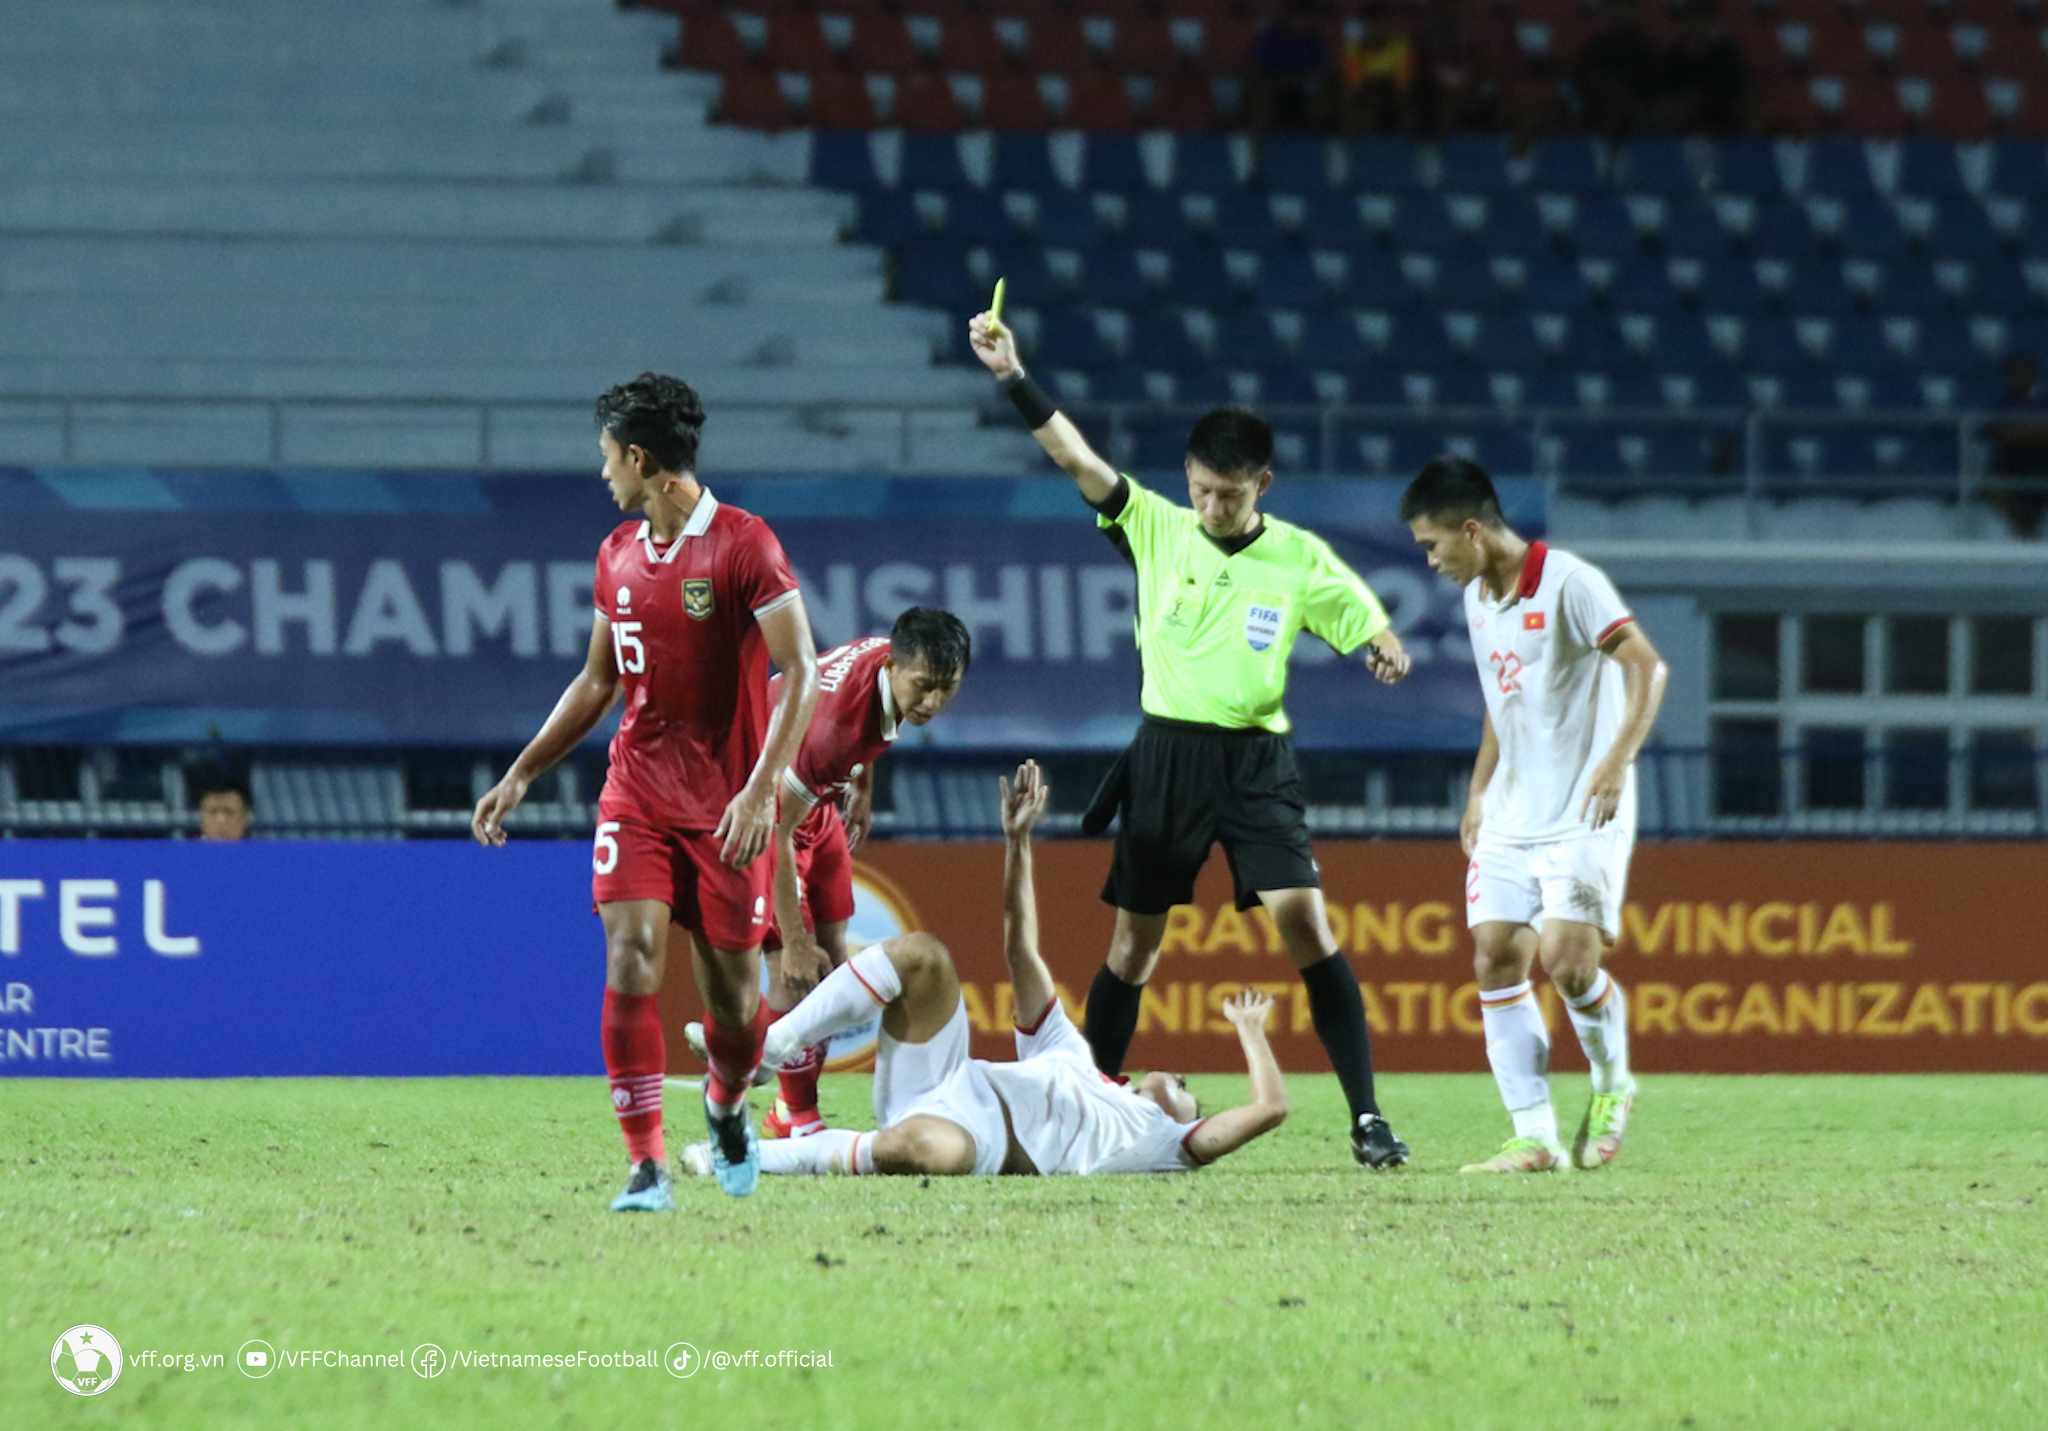 HLV Shin Tae Yong cho rằng, trọng tài là phần nguyên nhân khiến U23 Indonesia thất bại trước U23 Việt Nam - Ảnh: VFF